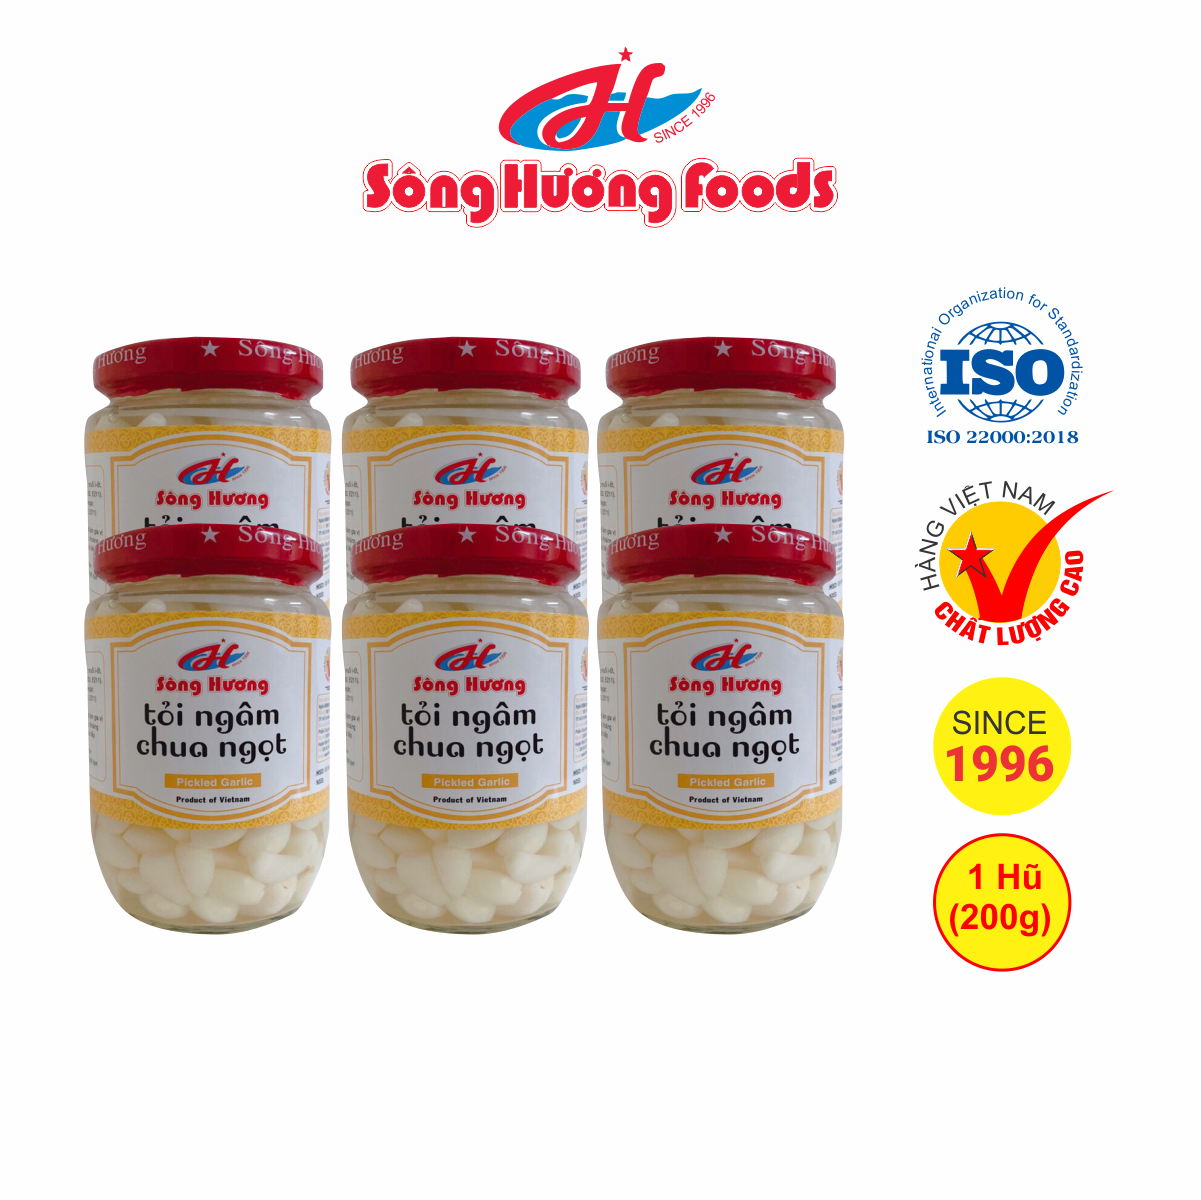 6 Hũ Tỏi Ngâm Chua Ngọt Sông Hương Foods Hũ 200g